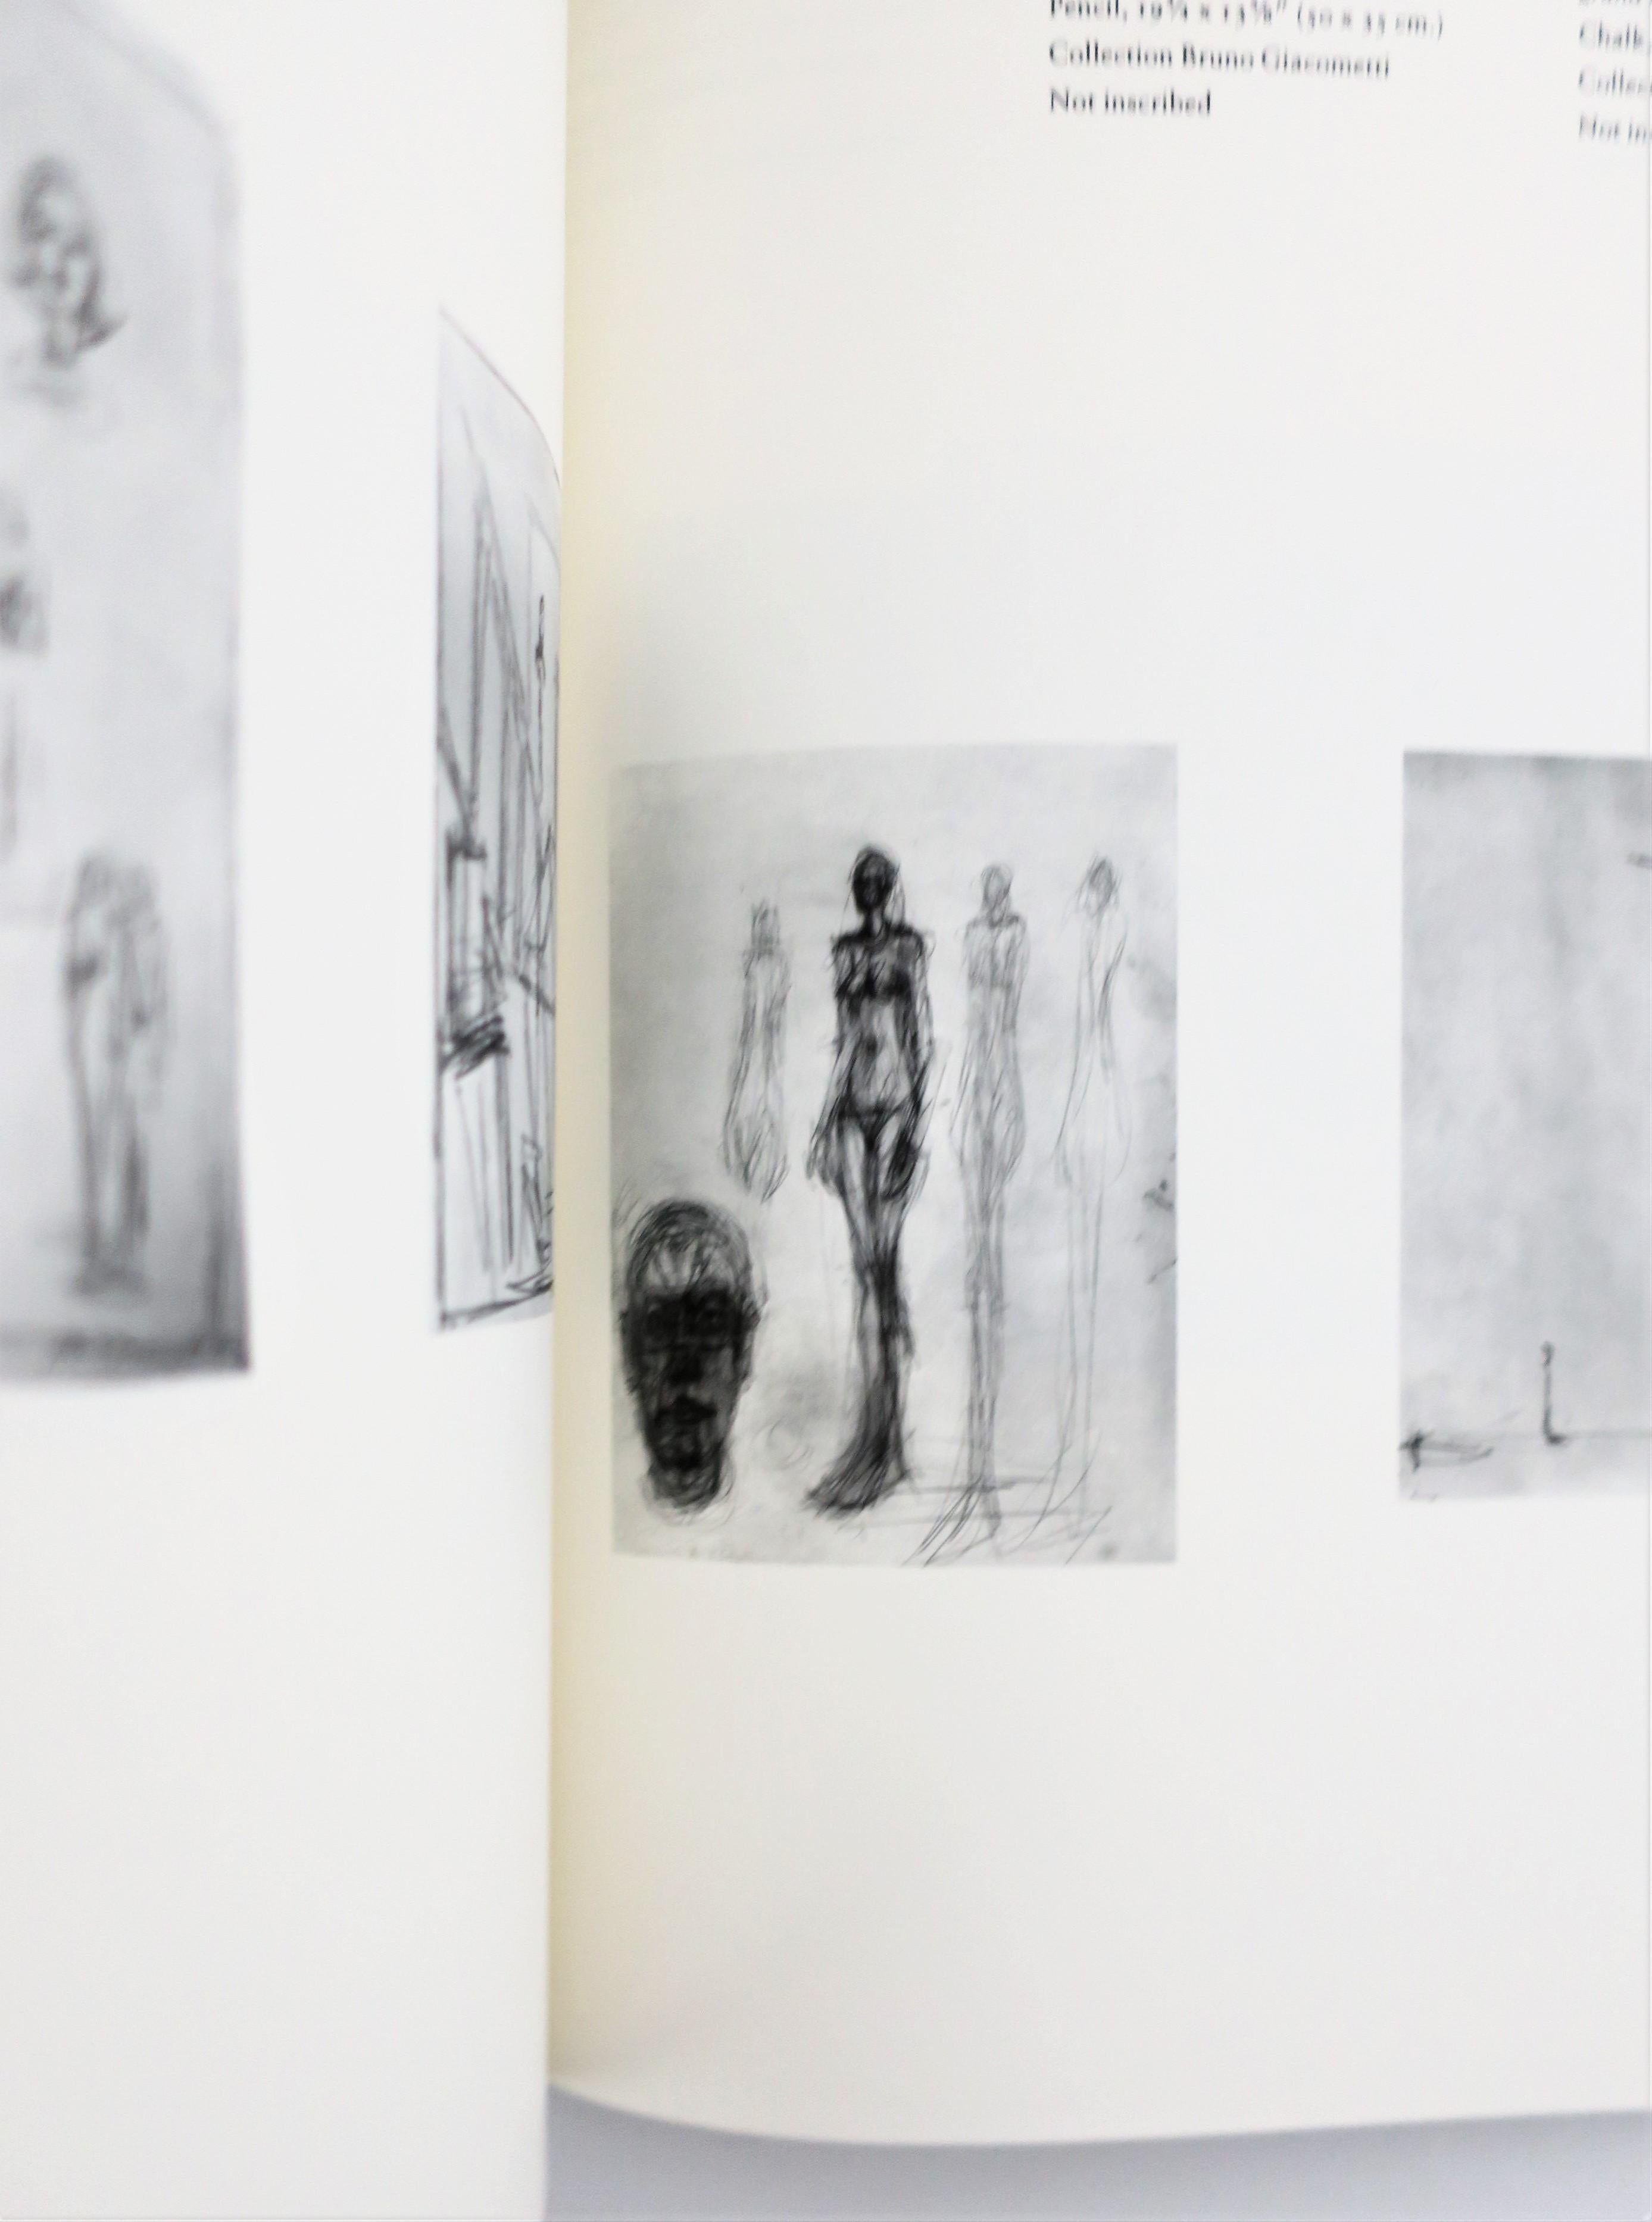 Paper Alberto Giacometti A Retrospective Exhibition Book, 1974, New York